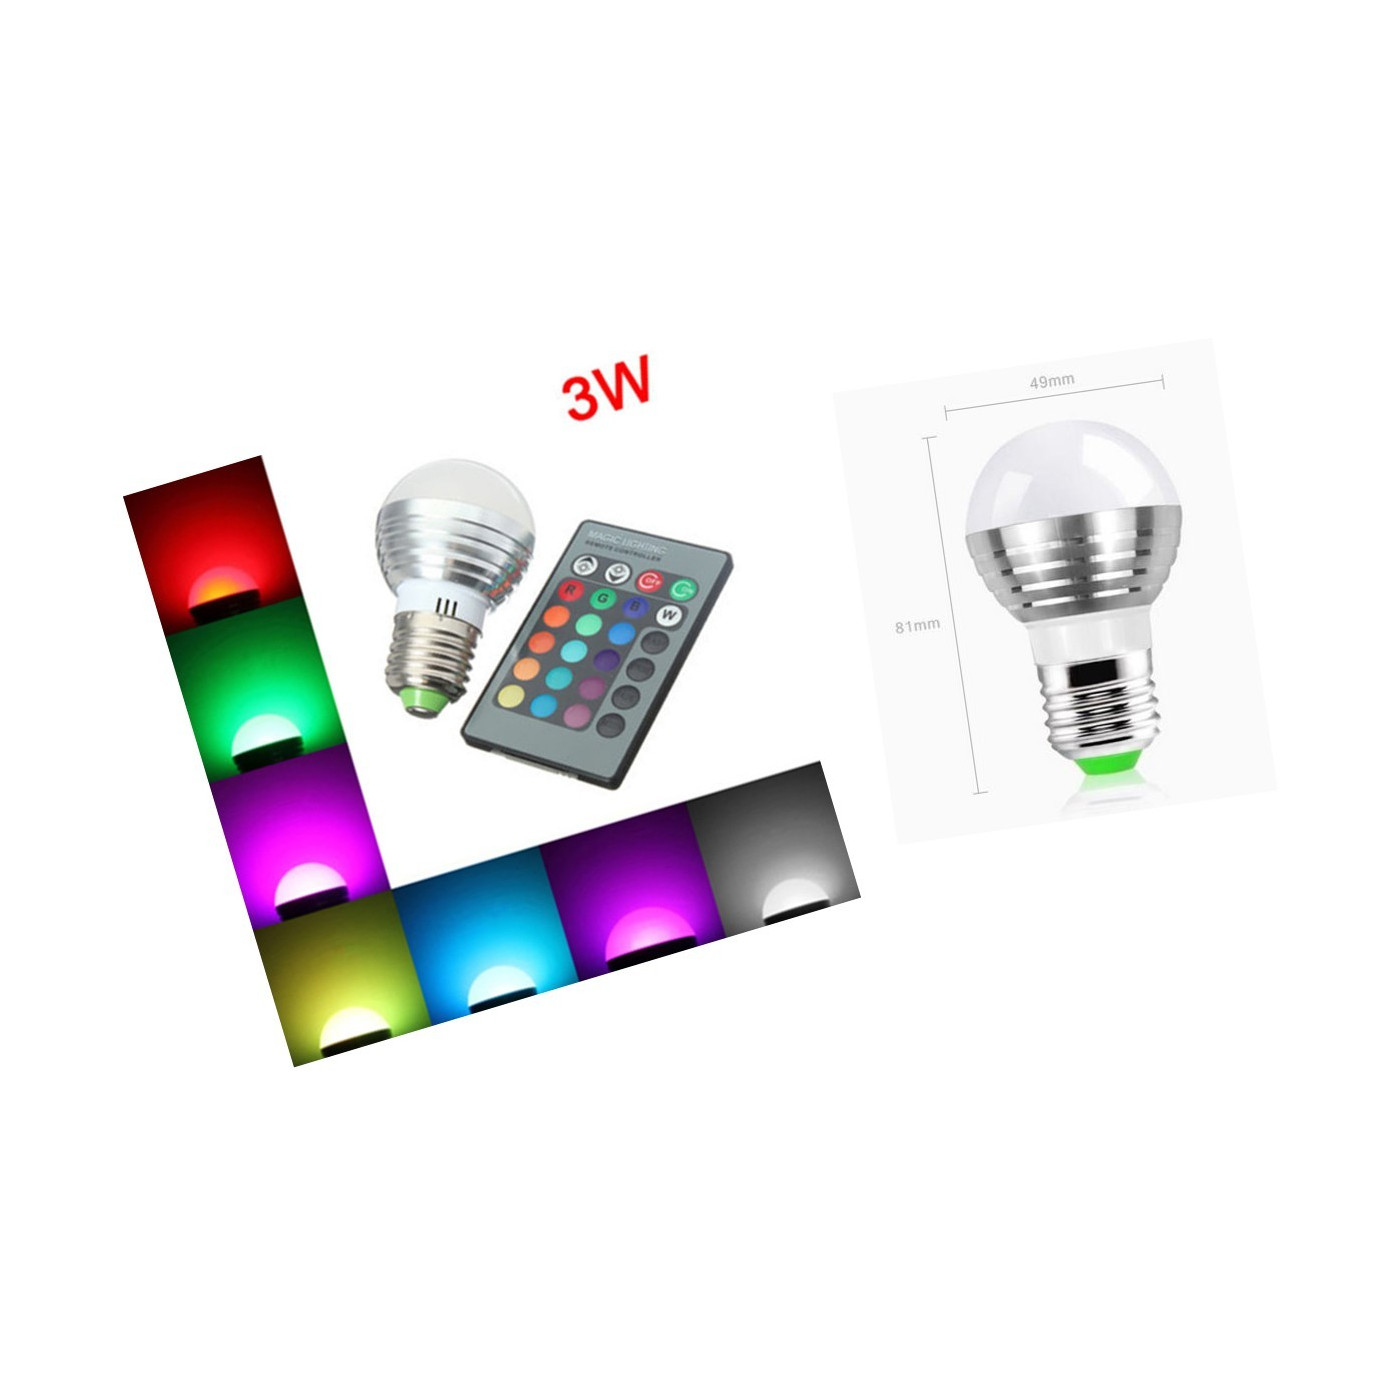 E27 RGB led light with remote, 3W